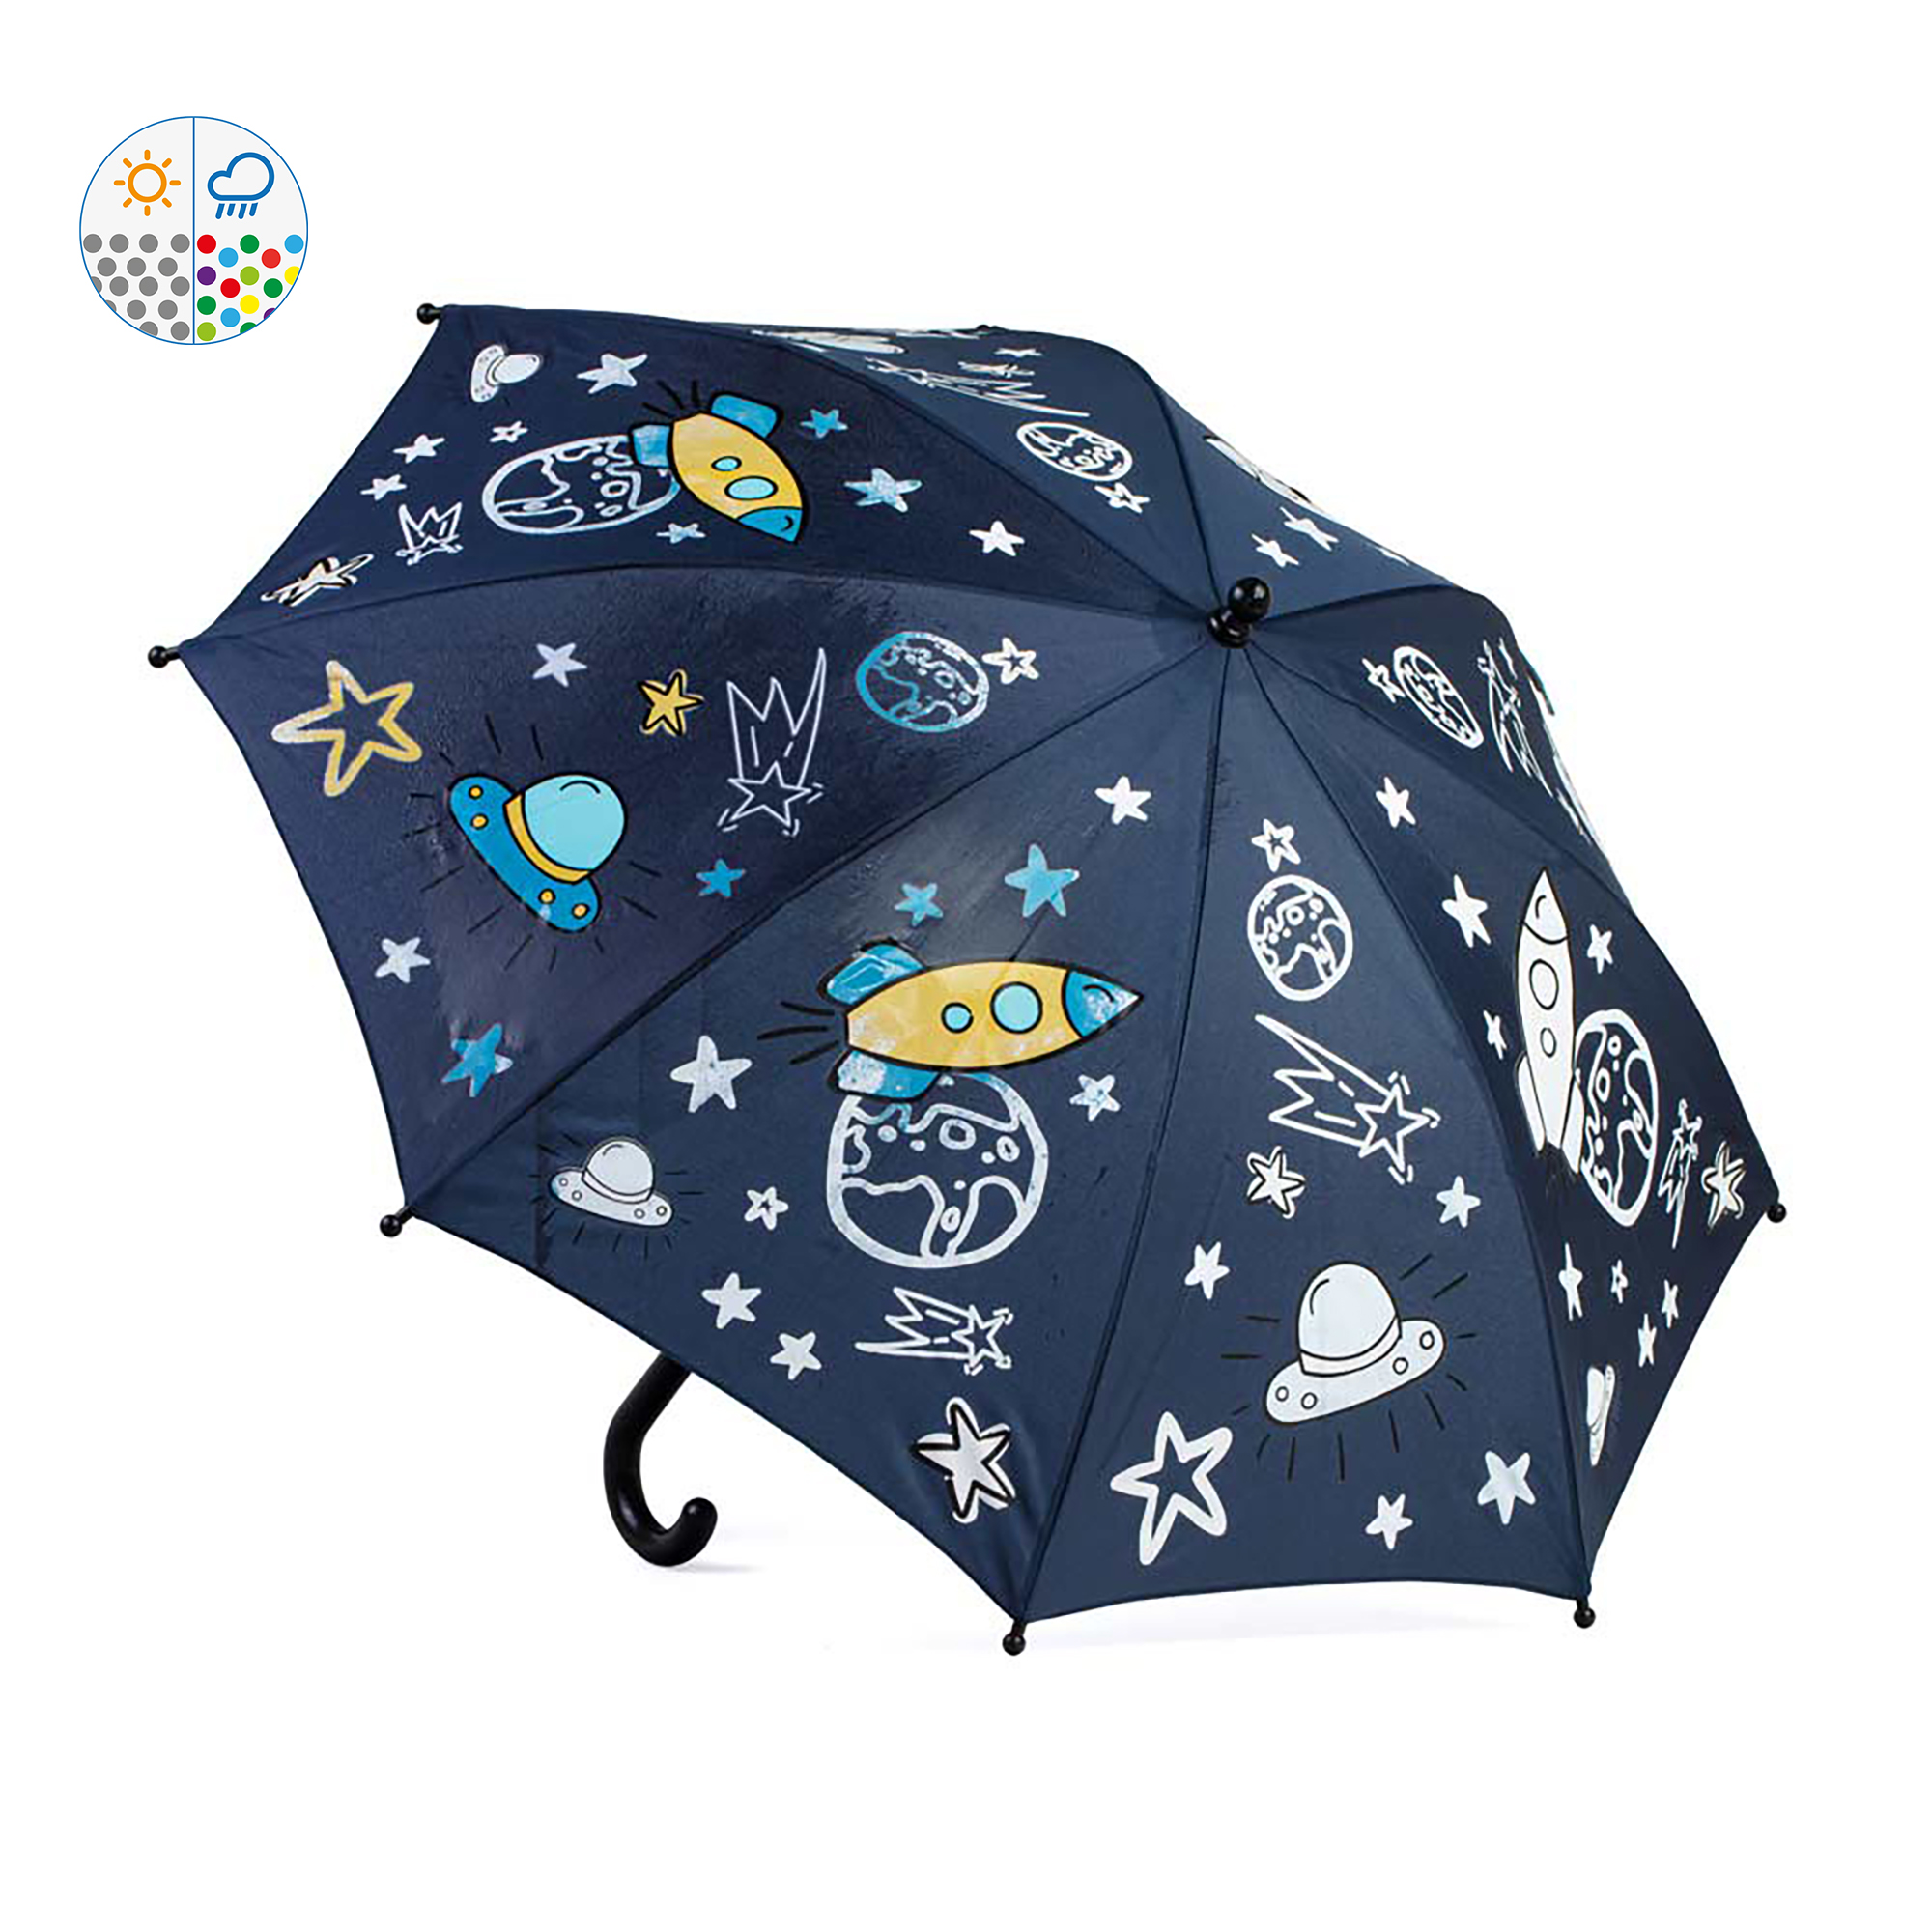 Зонт детский Котофей 03707072-00 синий зонт механический космос 8 спиц d 95 тёмно синий